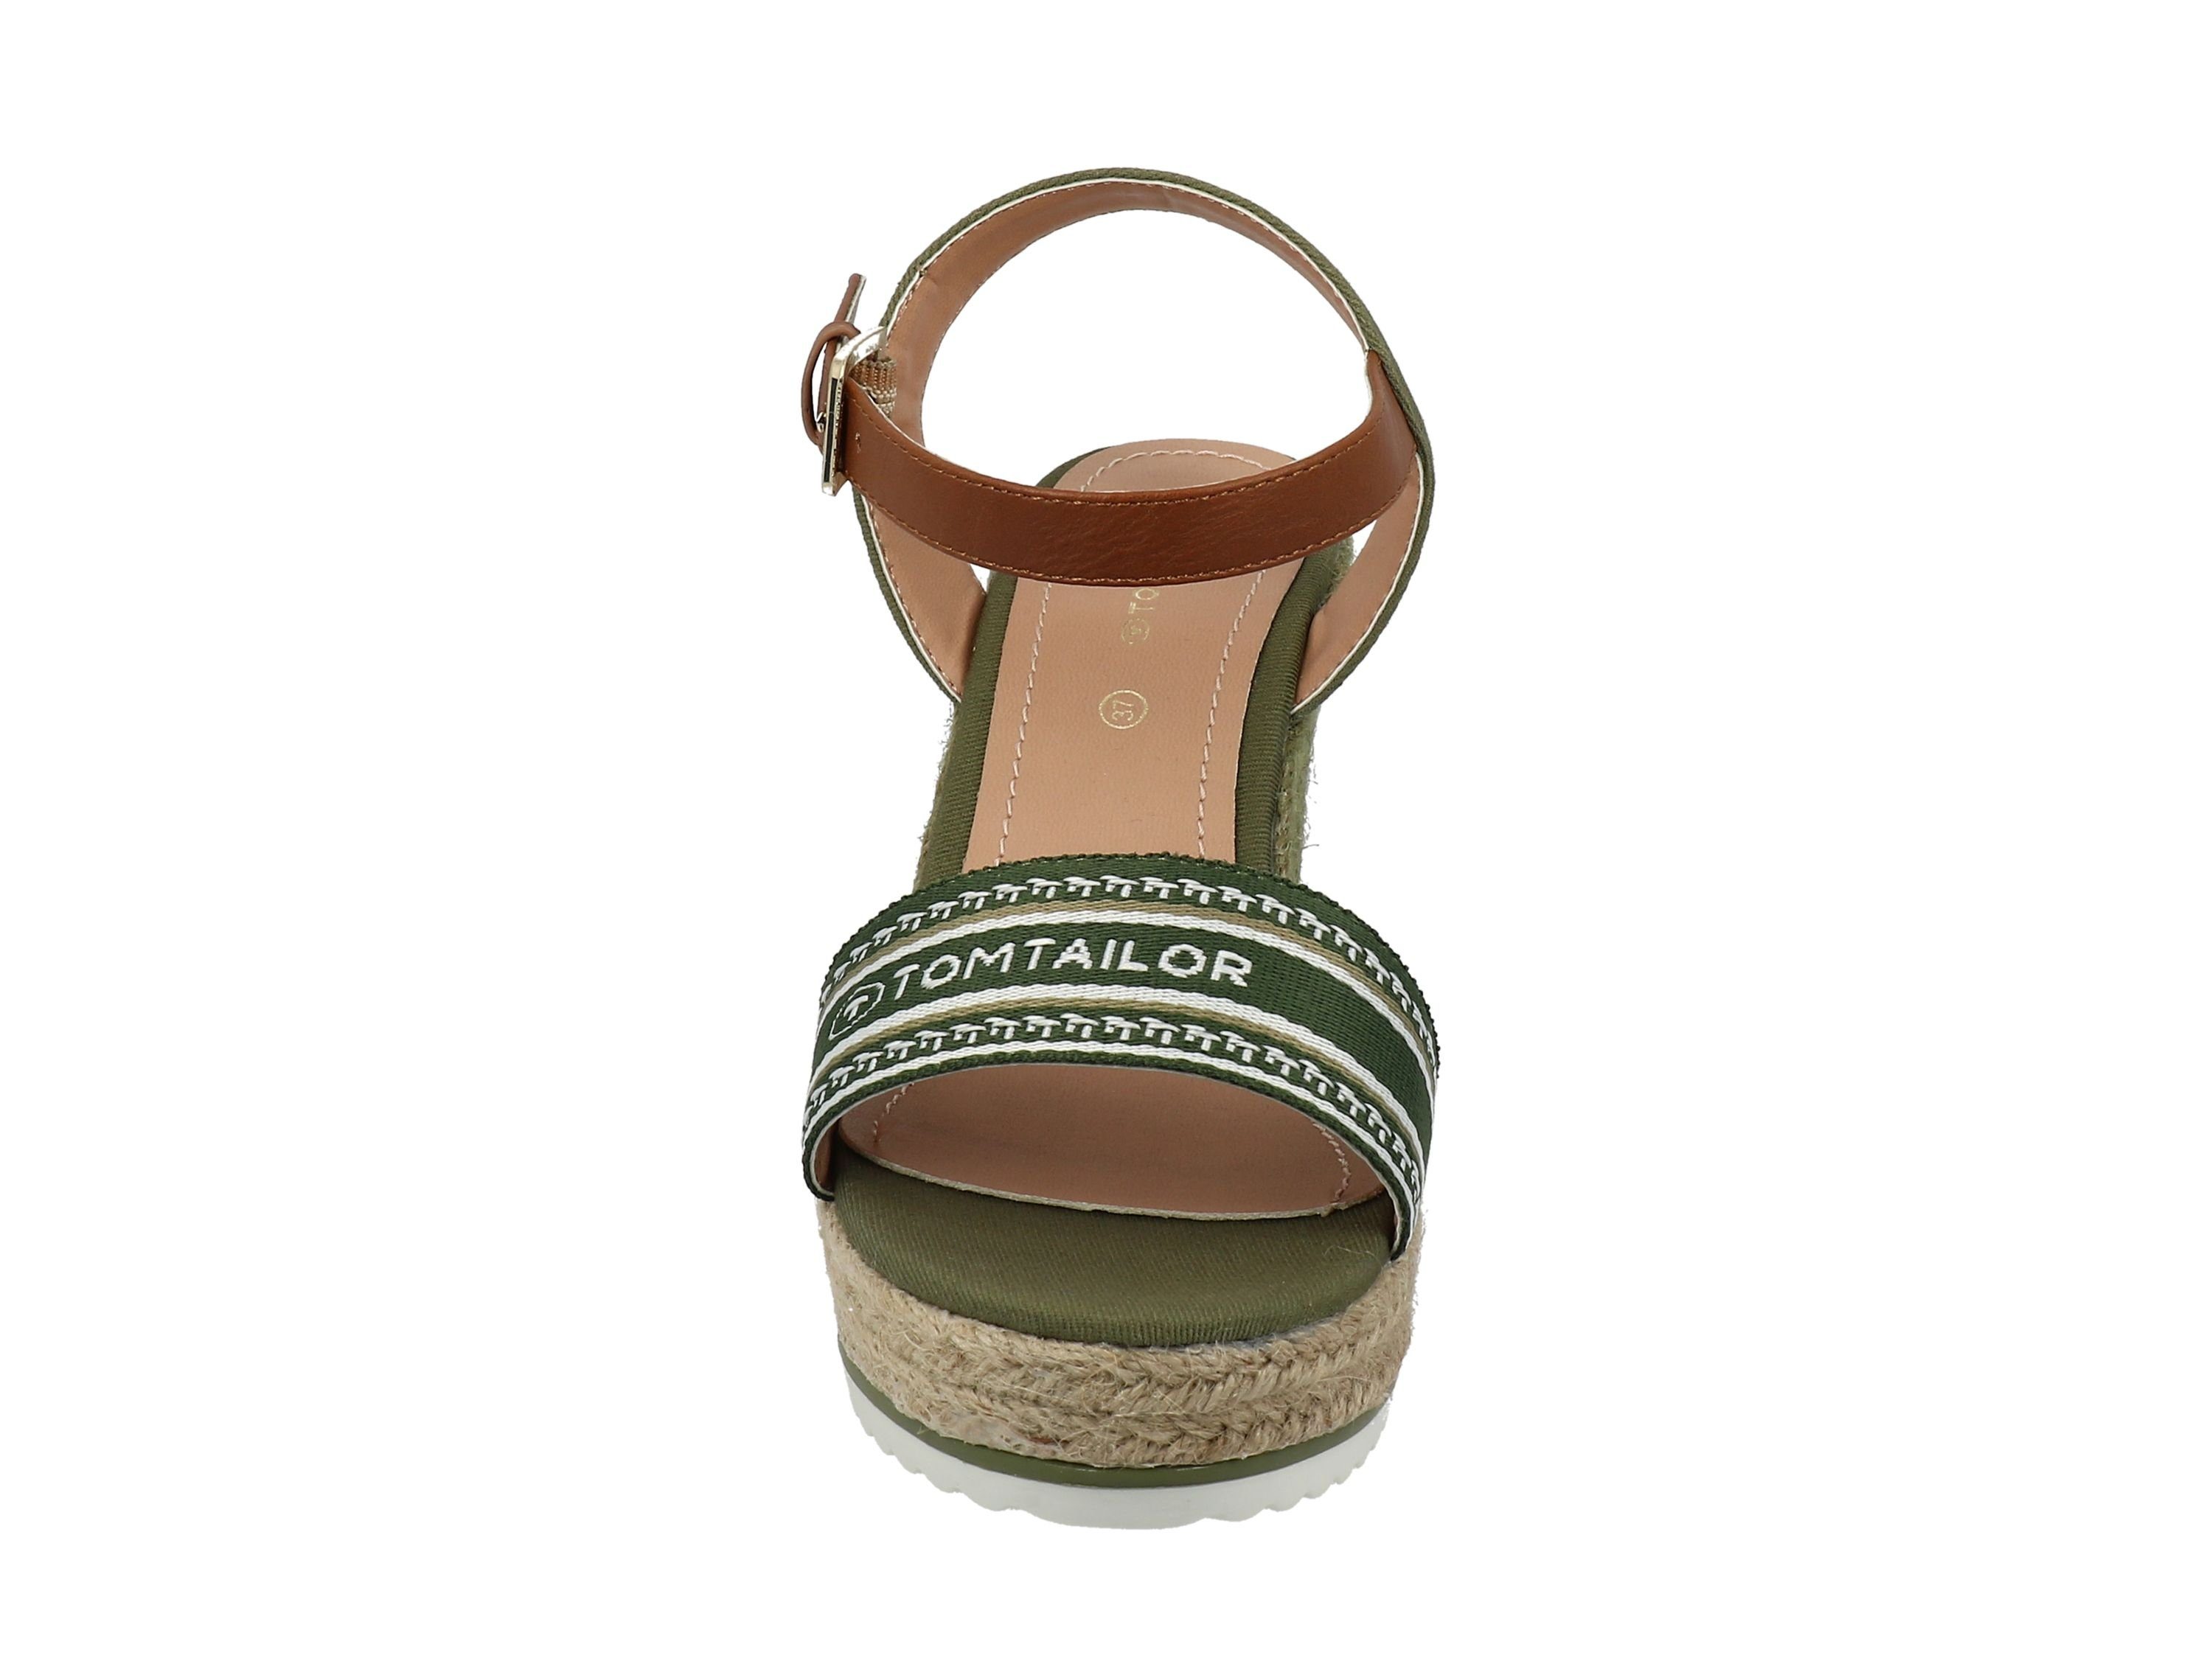 TOM TAILOR Tom Tailor Damen Sandalette schlicht Decksohlen-Print khaki 3290207 Logo-Print, Sandaletten